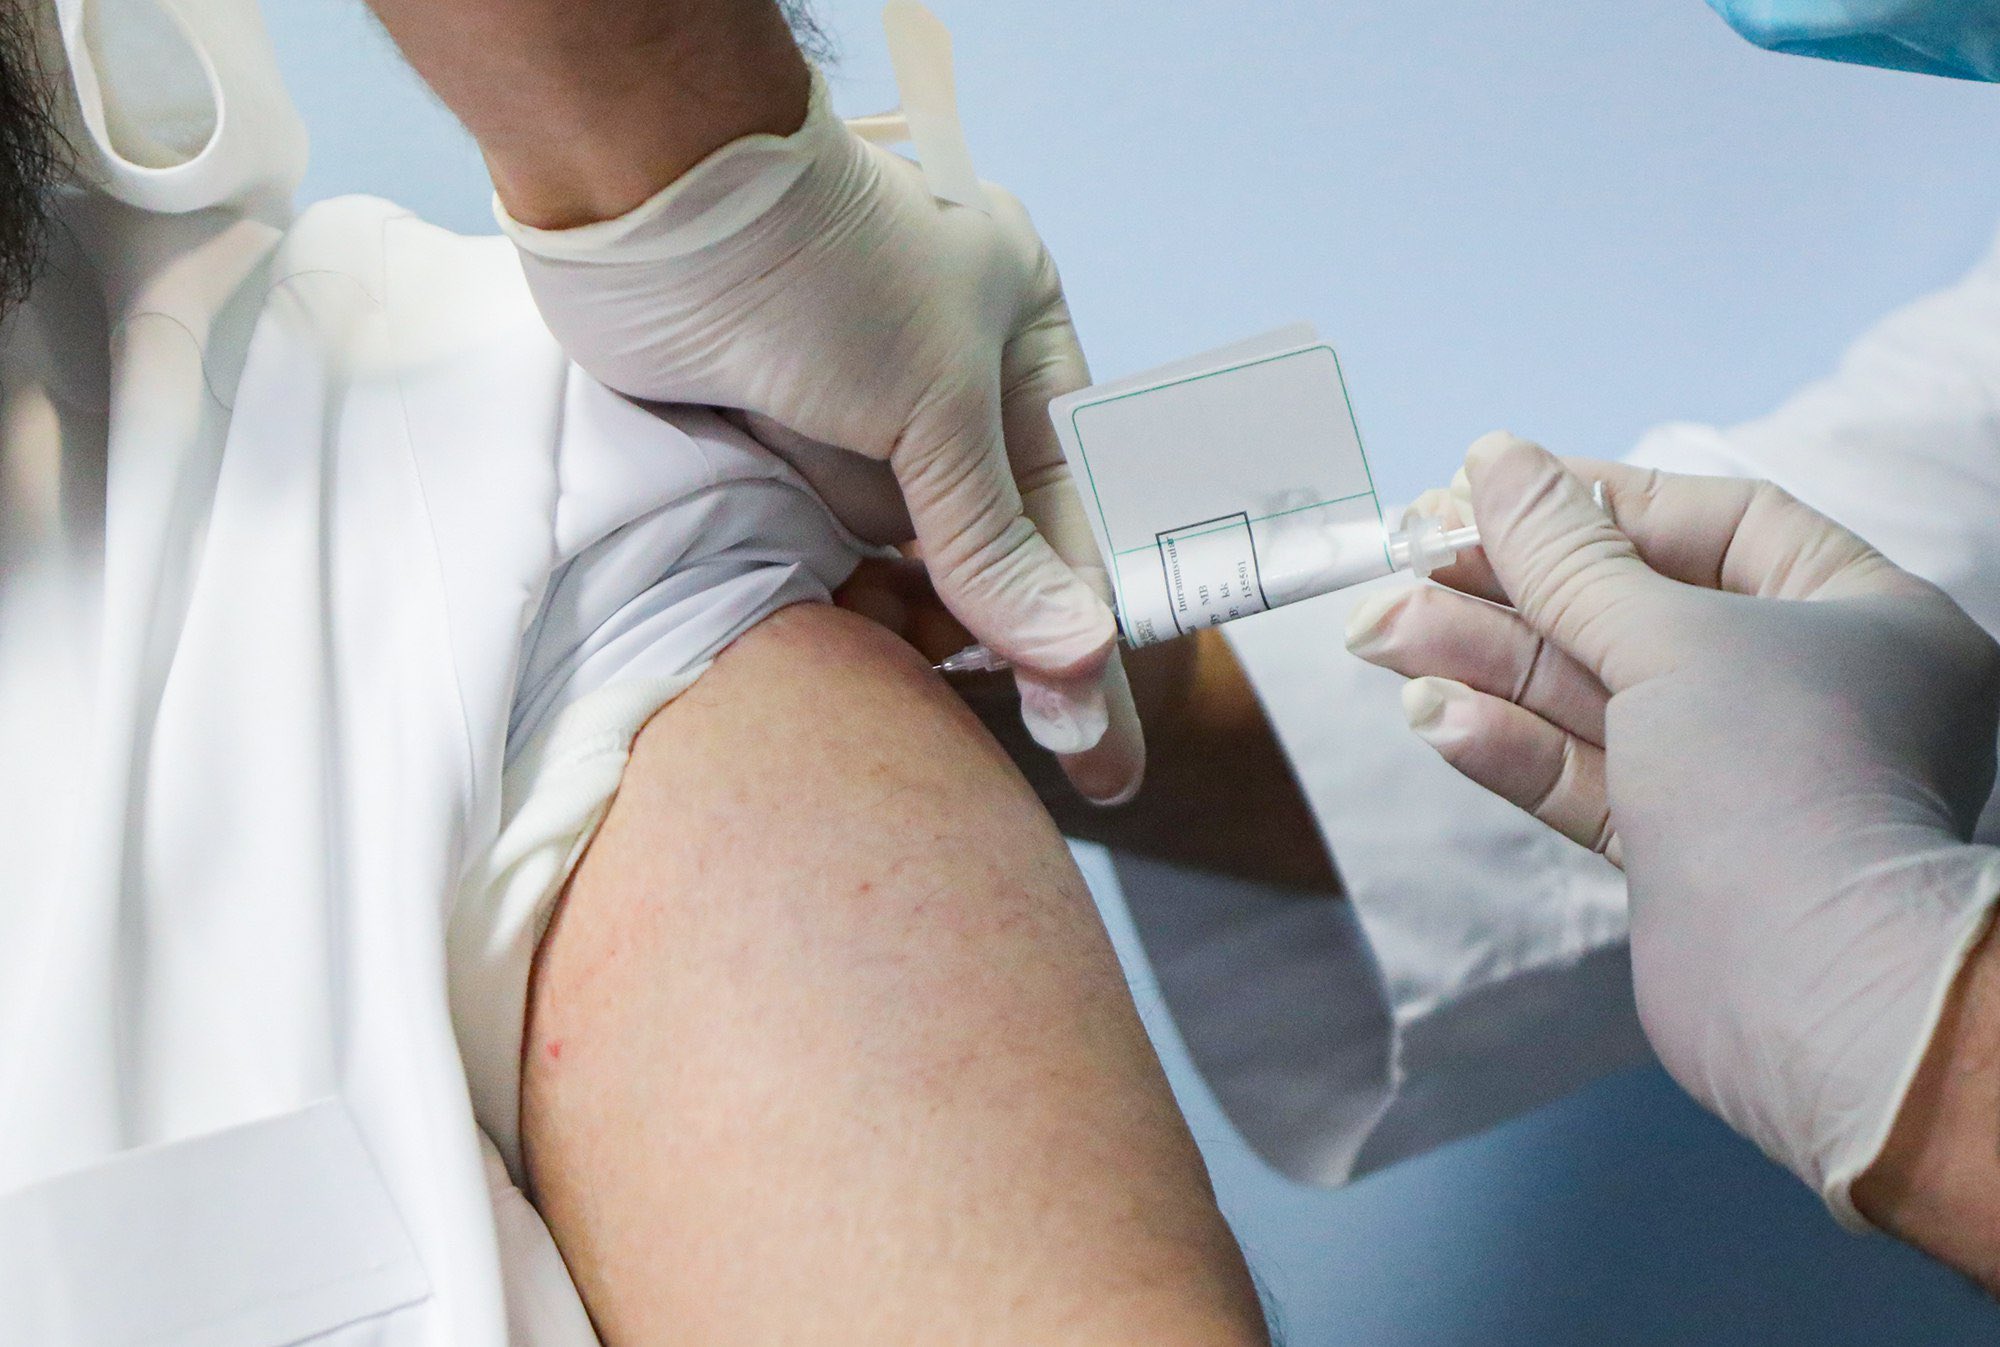 متى يمكن للمحصن مخالطة من تلقوا اللقاح دون كمامة؟ الصحة تجيب